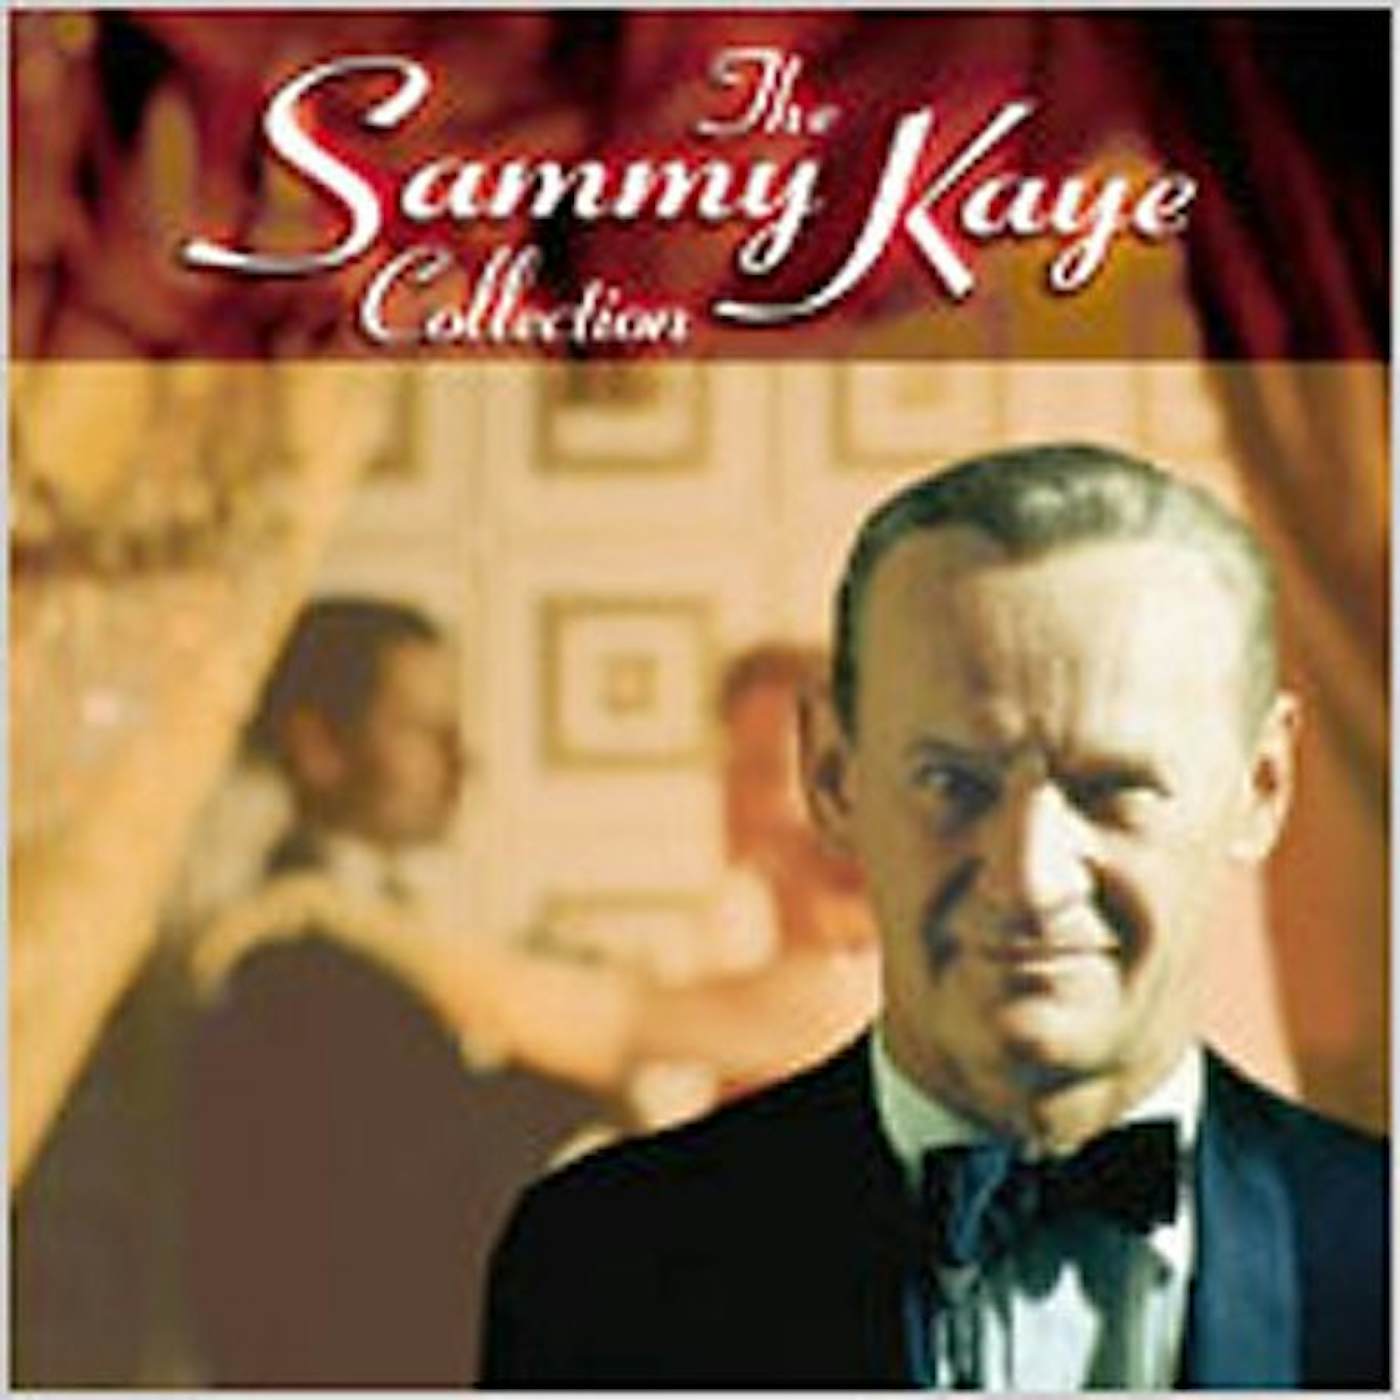 SAMMY KAYE COLLECTION CD